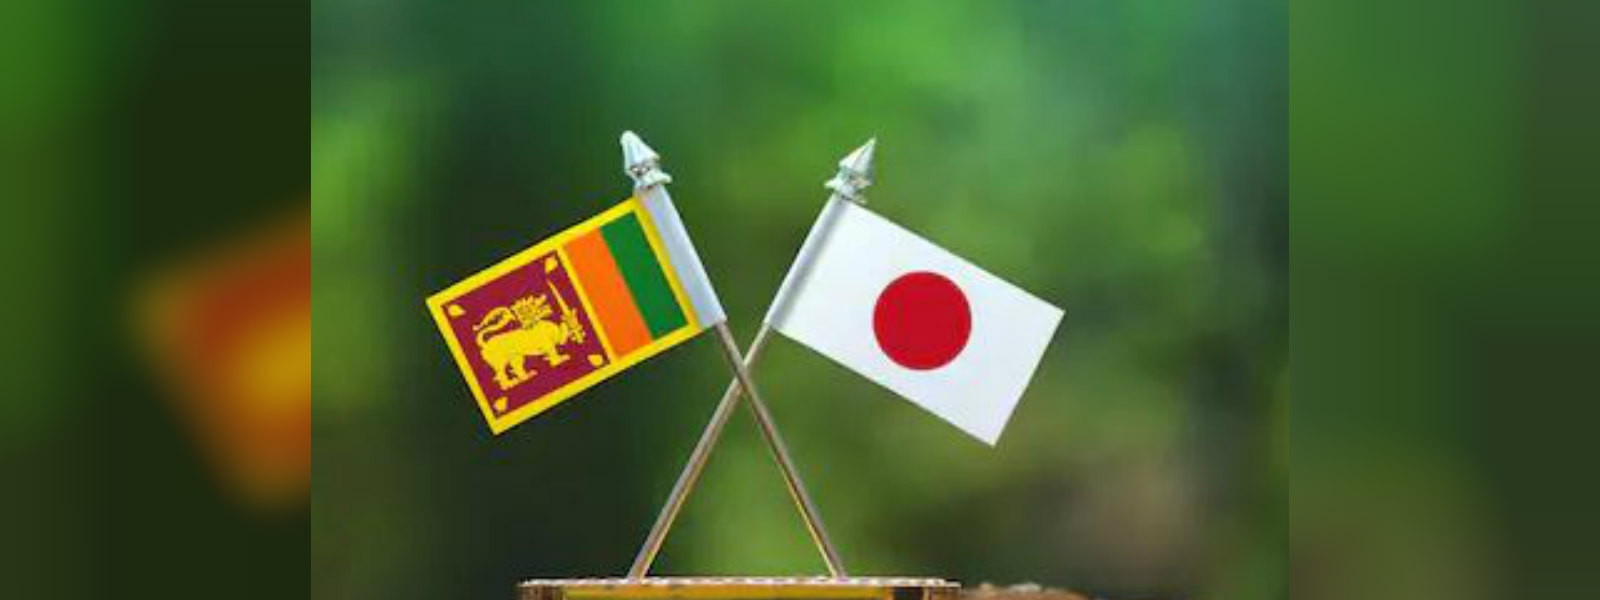 Japan grants USD 1.2 Million to combat COVID-19 in SriLanka